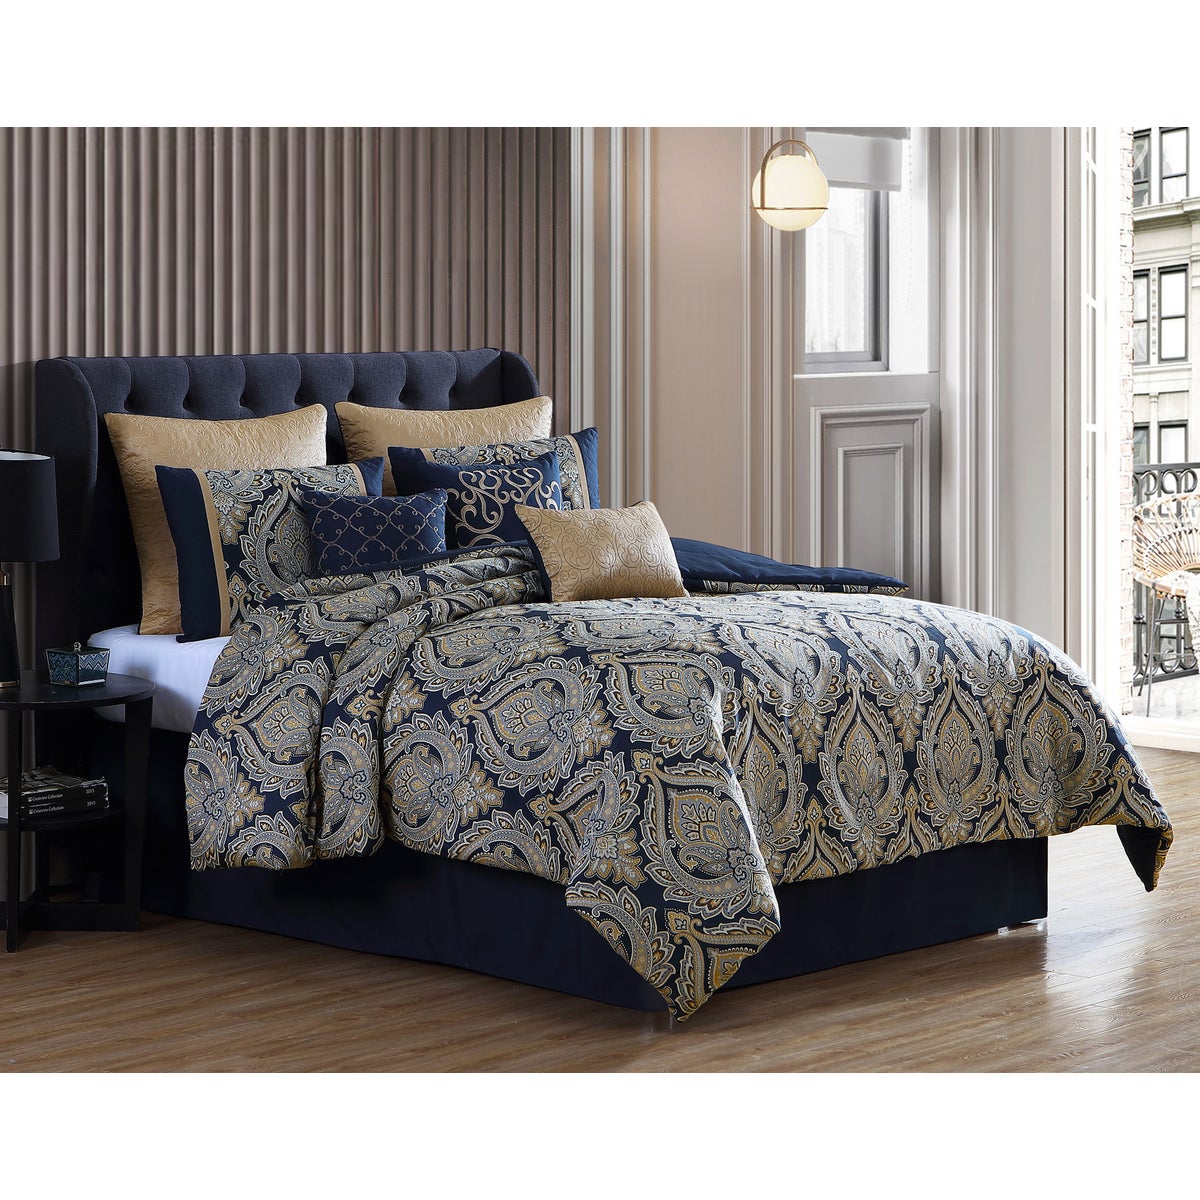 Bevan 9 pc Queen Comforter Set  Navy